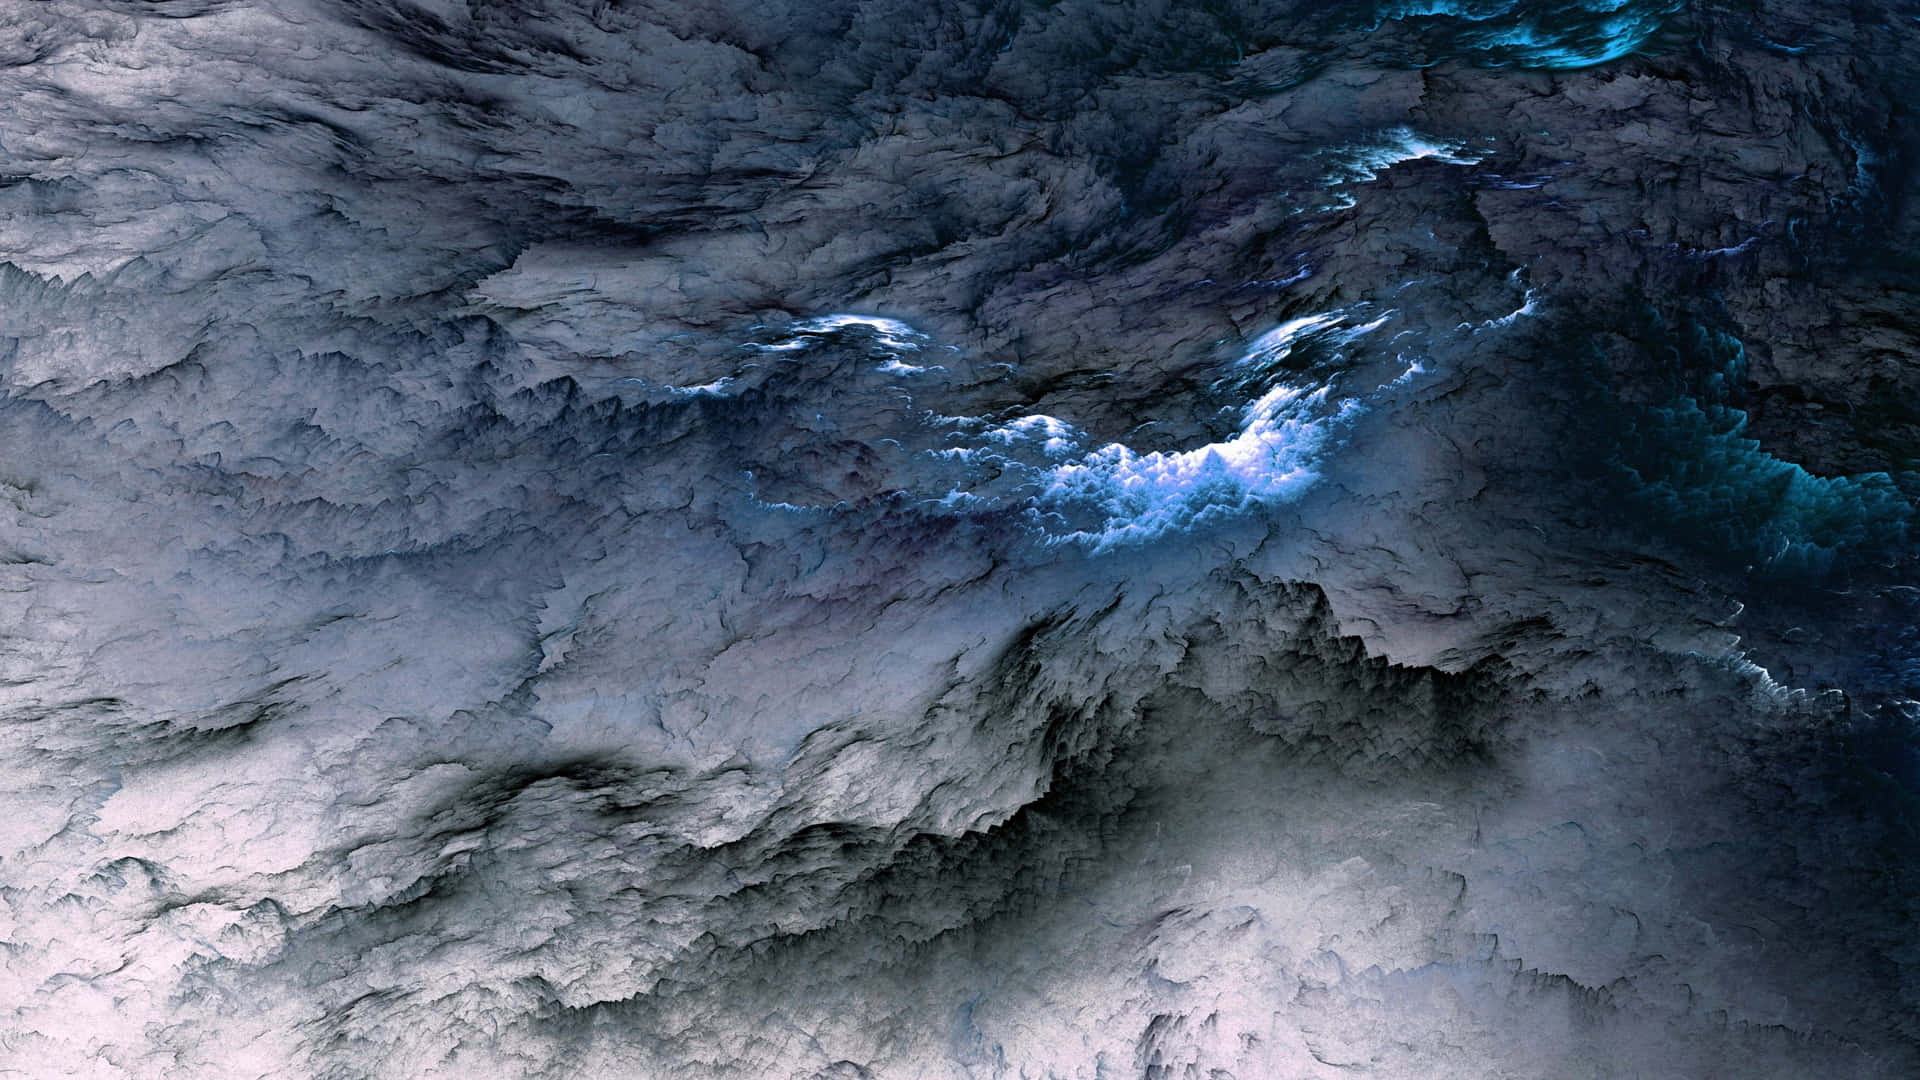 Atardecerresplandeciente Entre Las Nubes. Fondo de pantalla